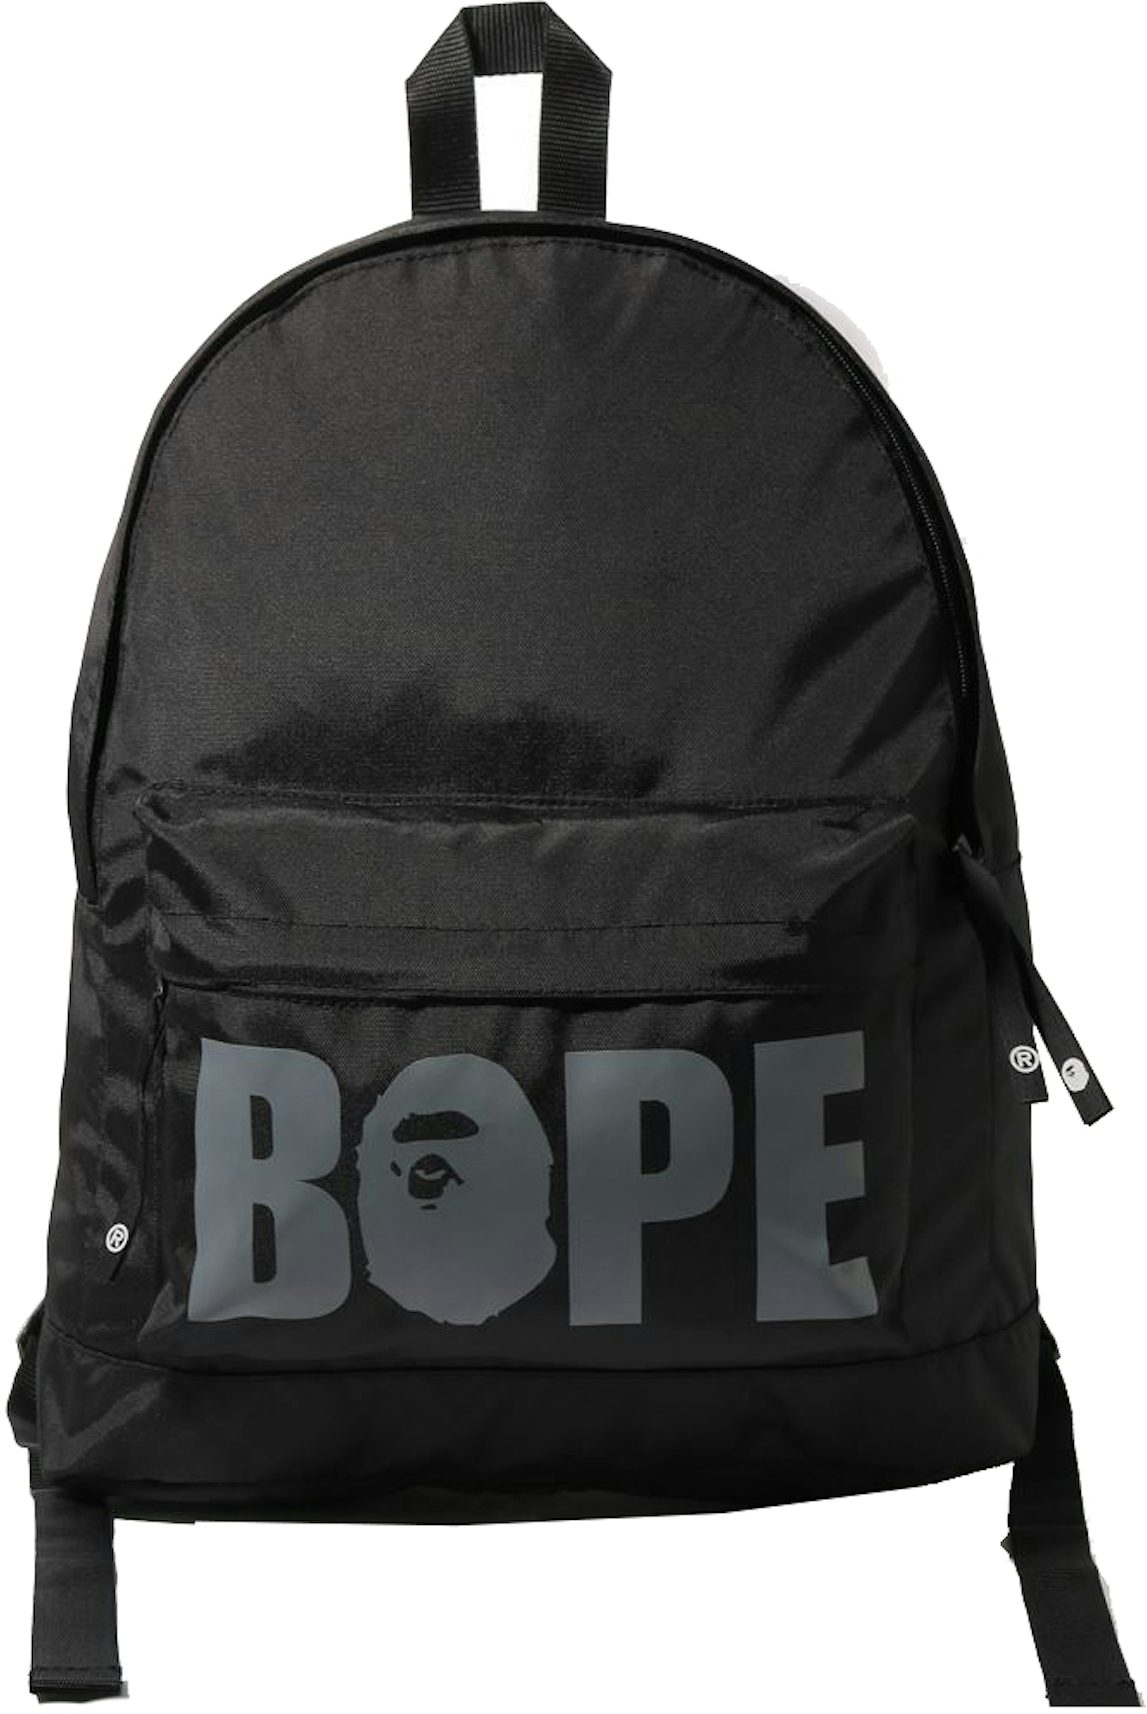 BAPE A Bathing Ape BAPE 2021 Shoulder Bag Side Bag Chest with Carabiner  SUPREME